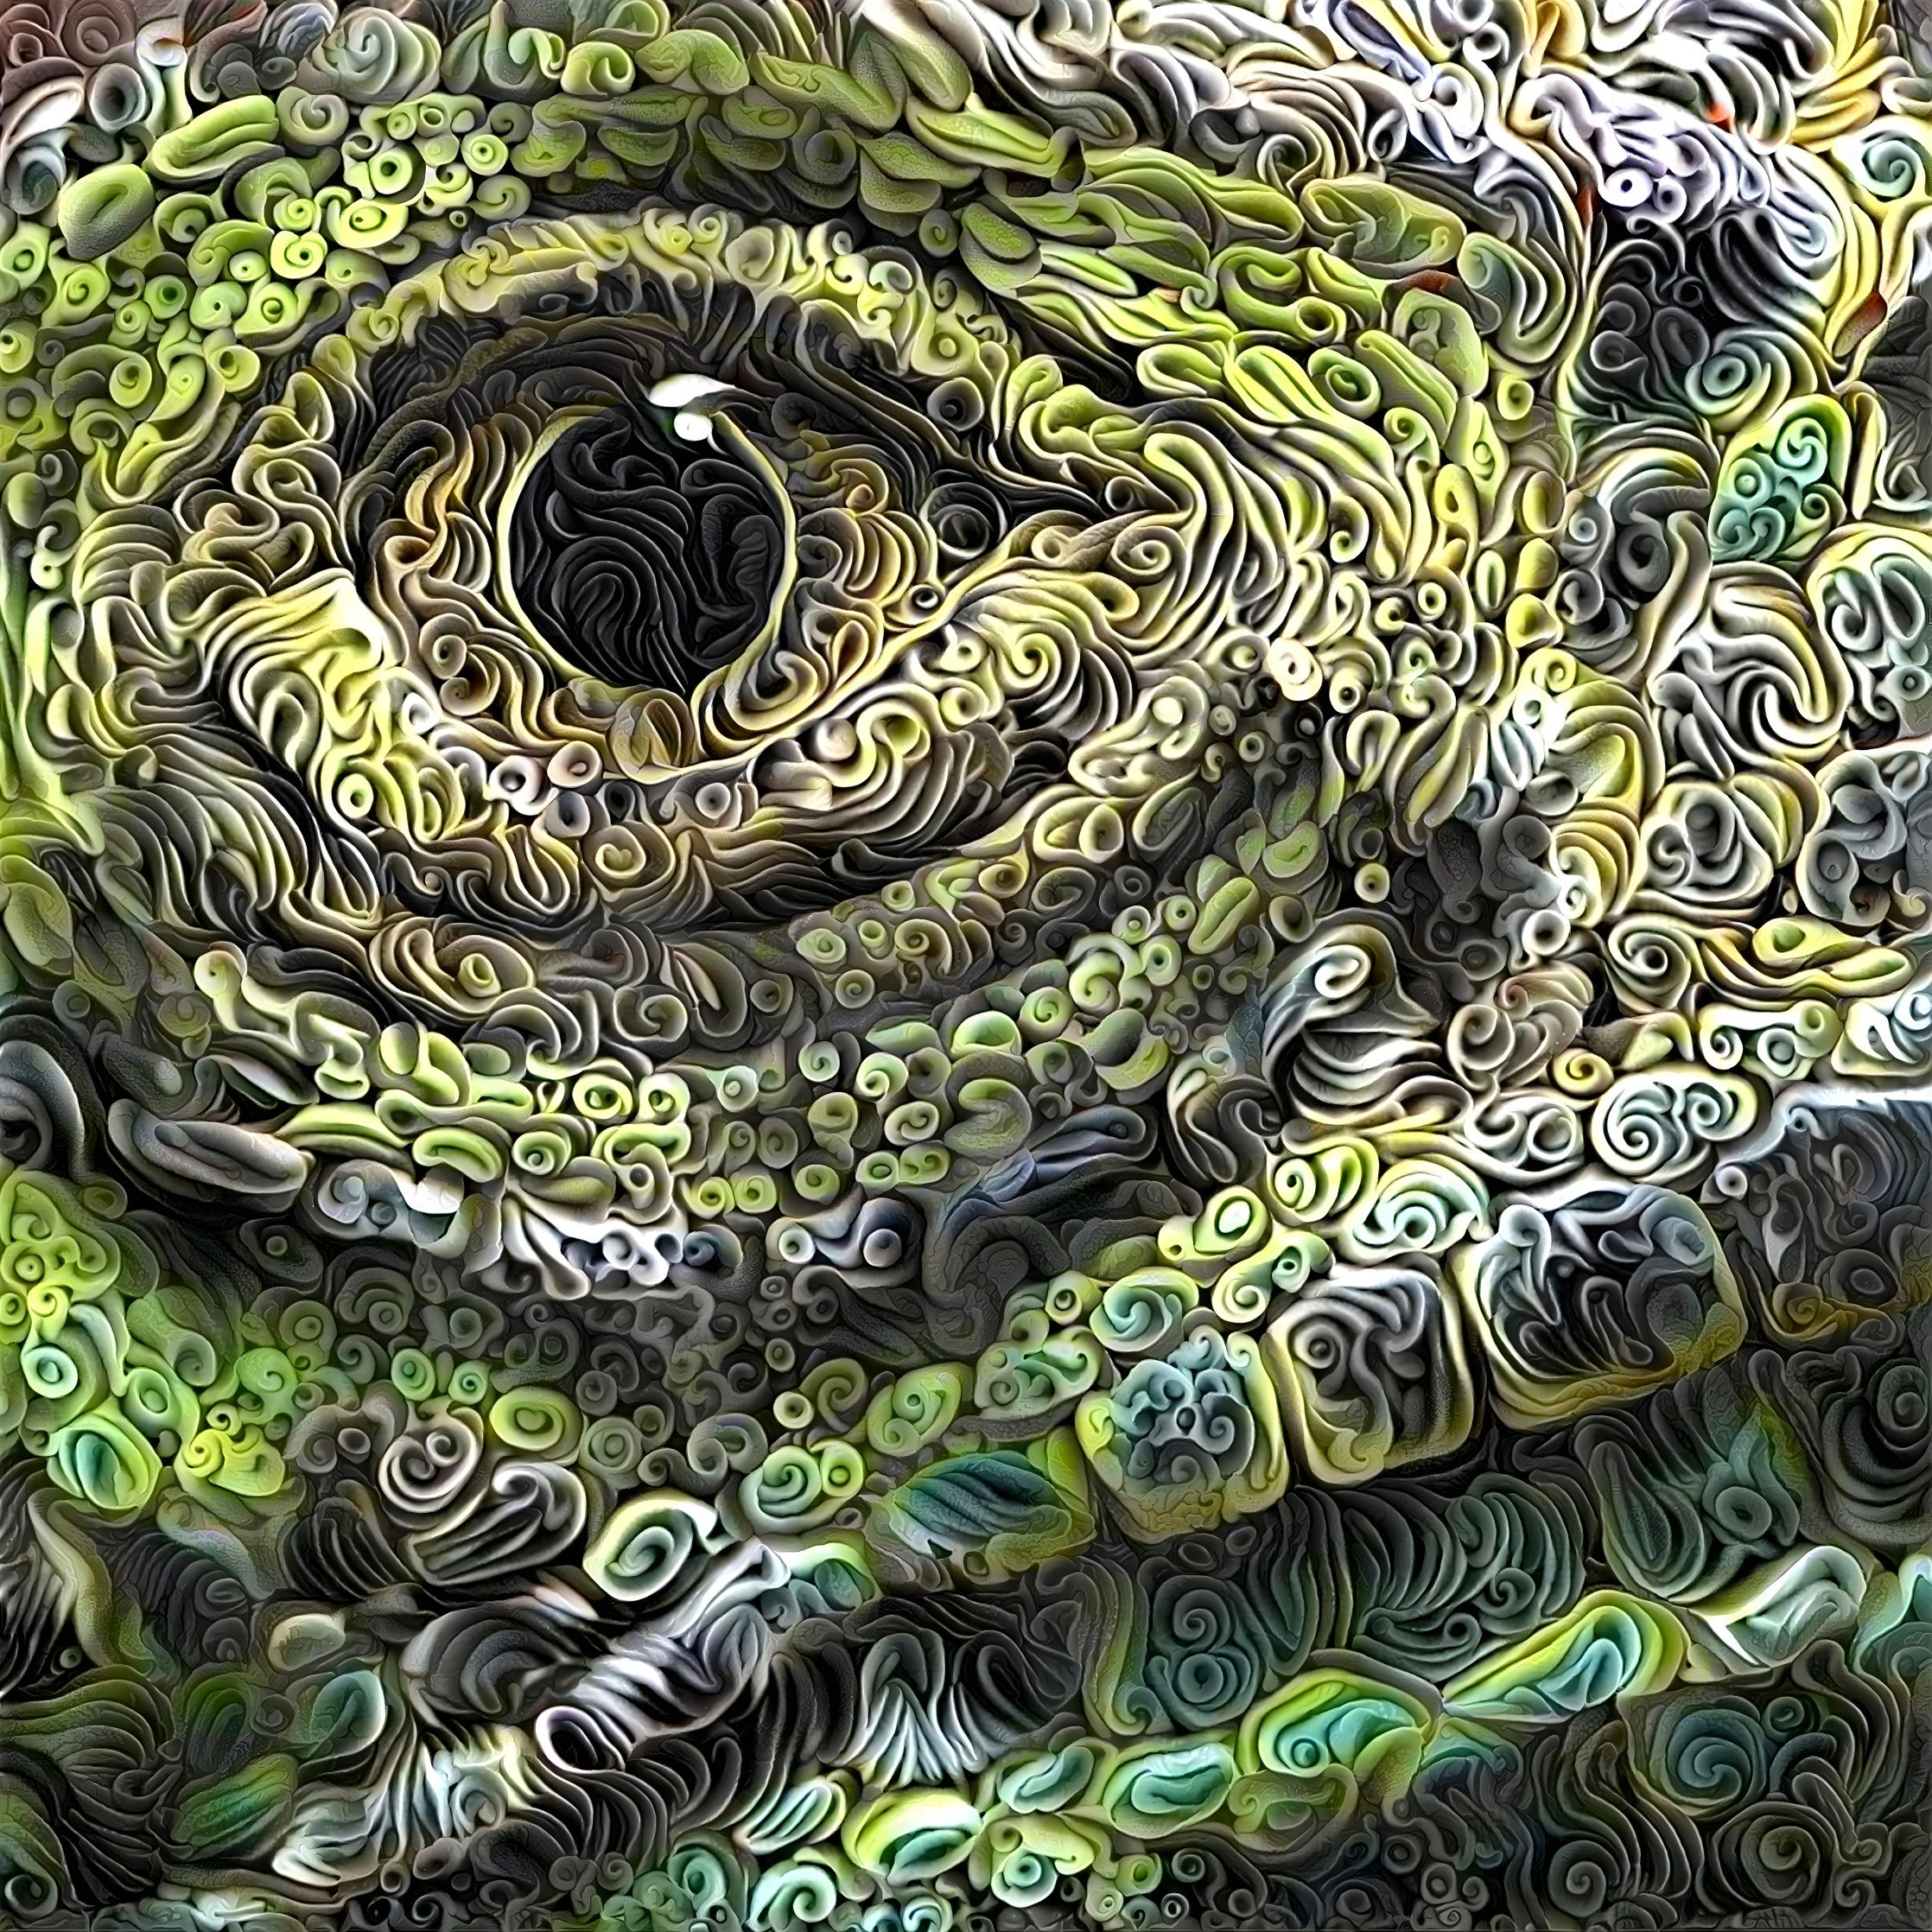 Reptile Eye v5